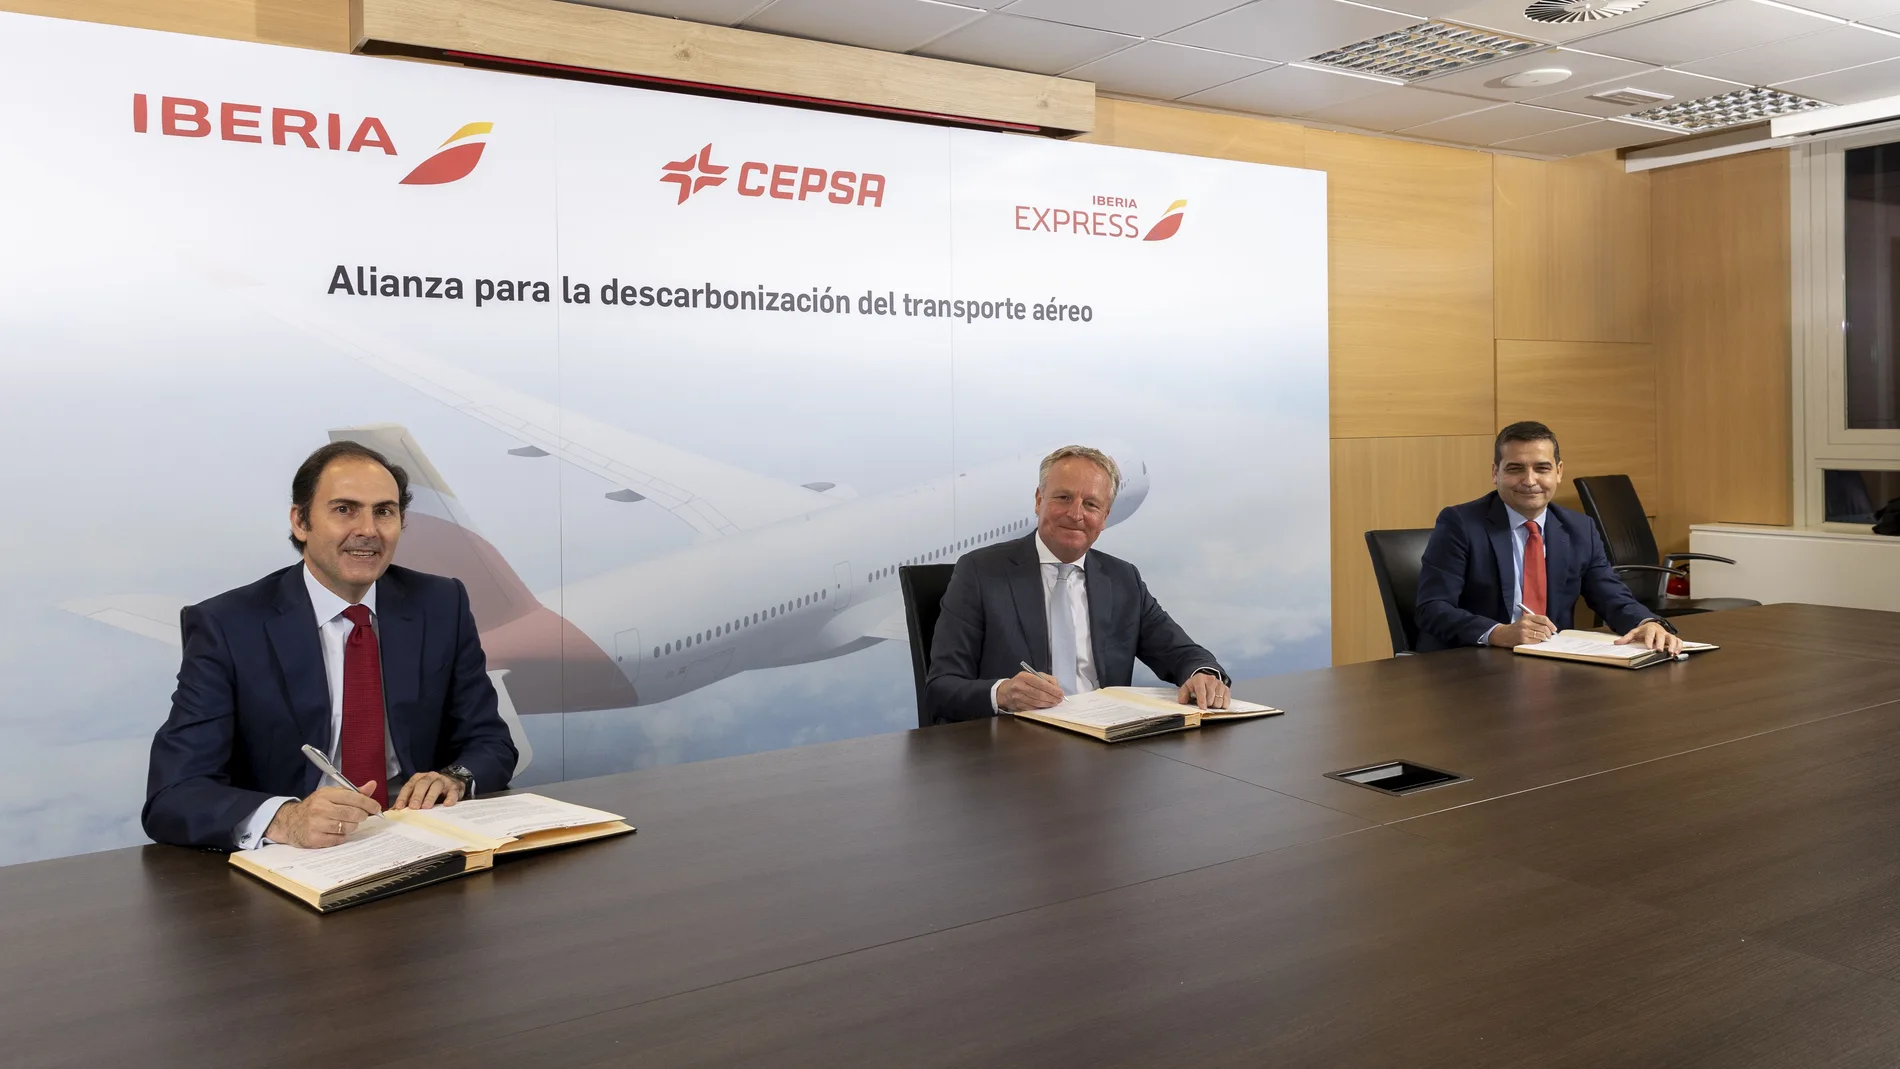 Javier Sánchez-Prieto, presidente y CEO de Iberia; Maarten Wetselaar, CEO de Cepsa, y Carlos Gómez, CEO de Iberia Express